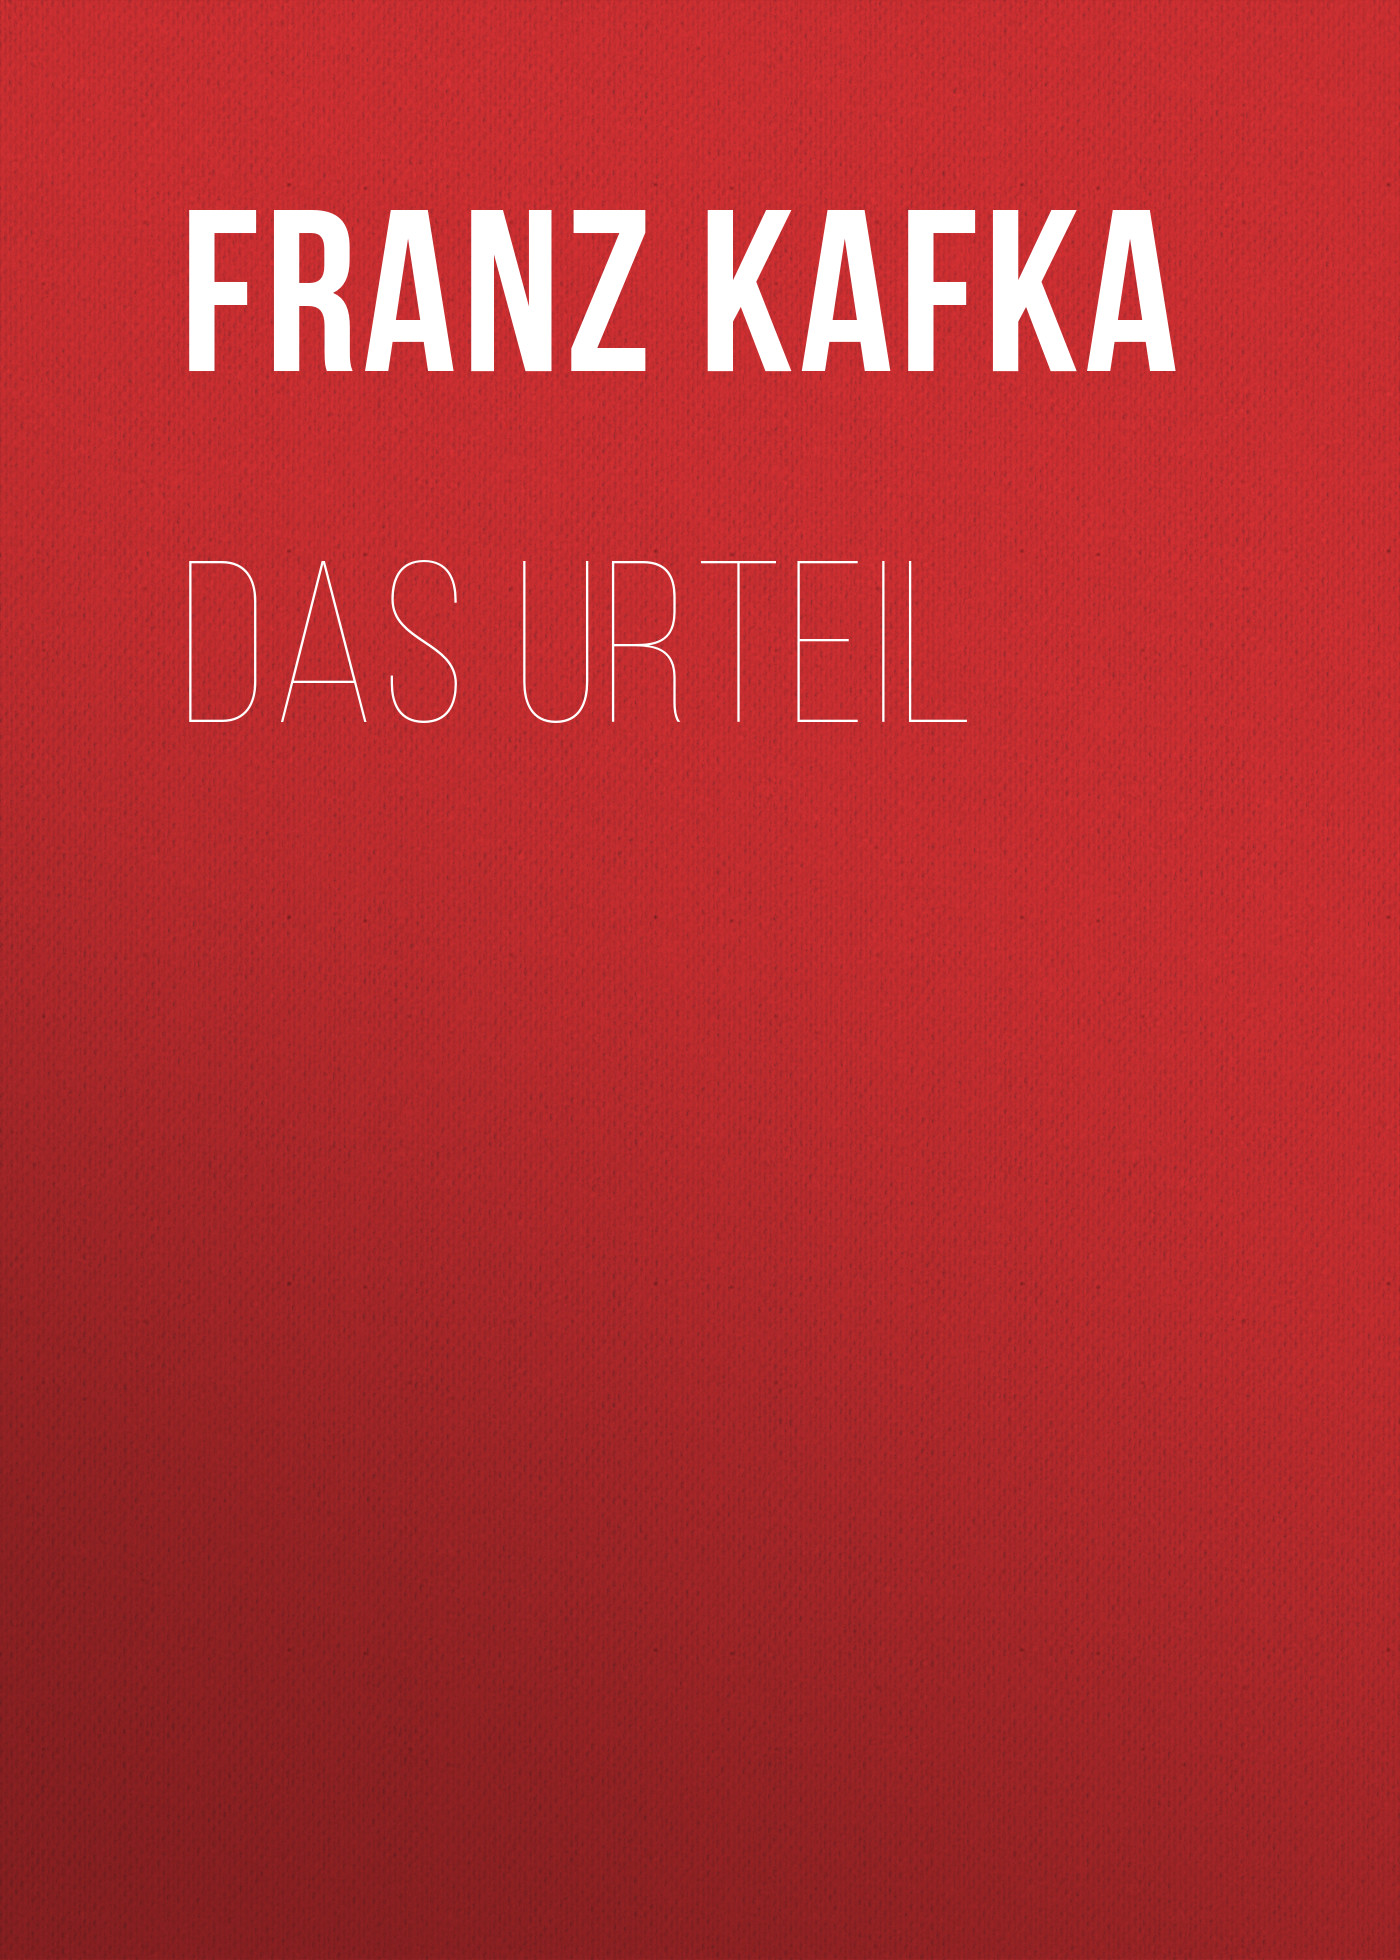 Книга Das Urteil из серии , созданная Franz Kafka, может относится к жанру Зарубежная классика. Стоимость электронной книги Das Urteil с идентификатором 48631756 составляет 0 руб.